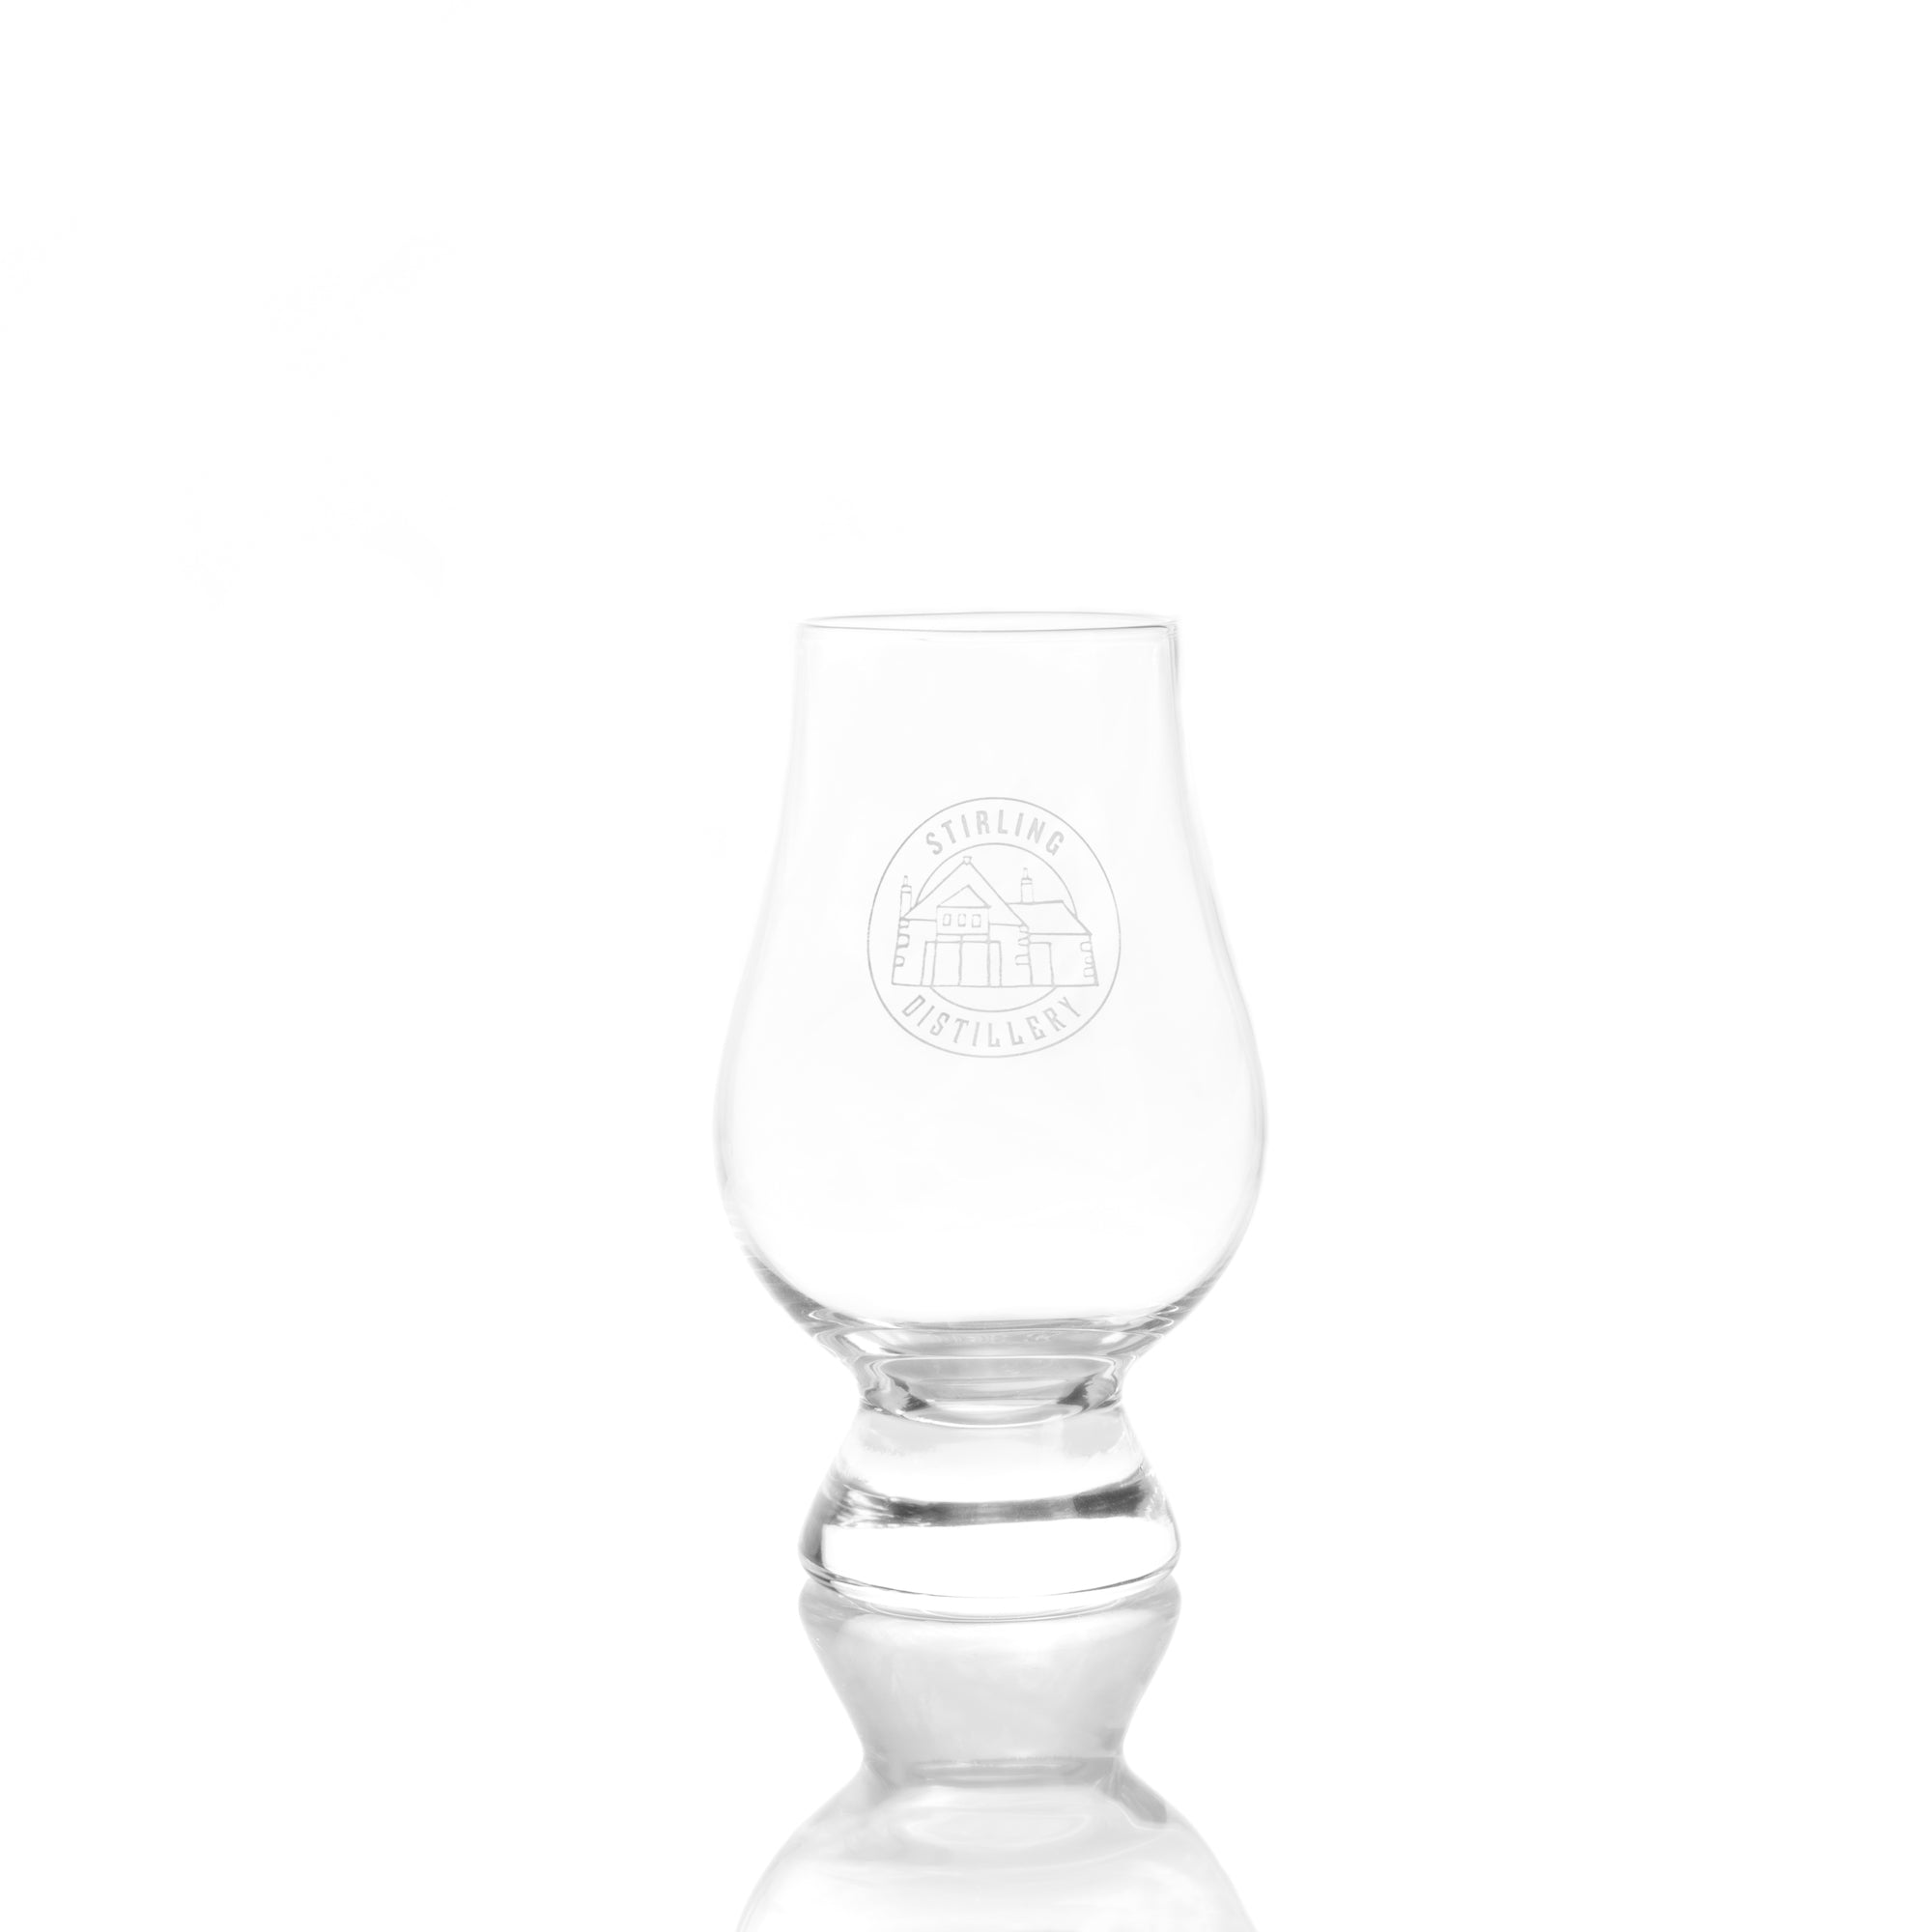 Stirling Distillery Branded Glencairn Glass